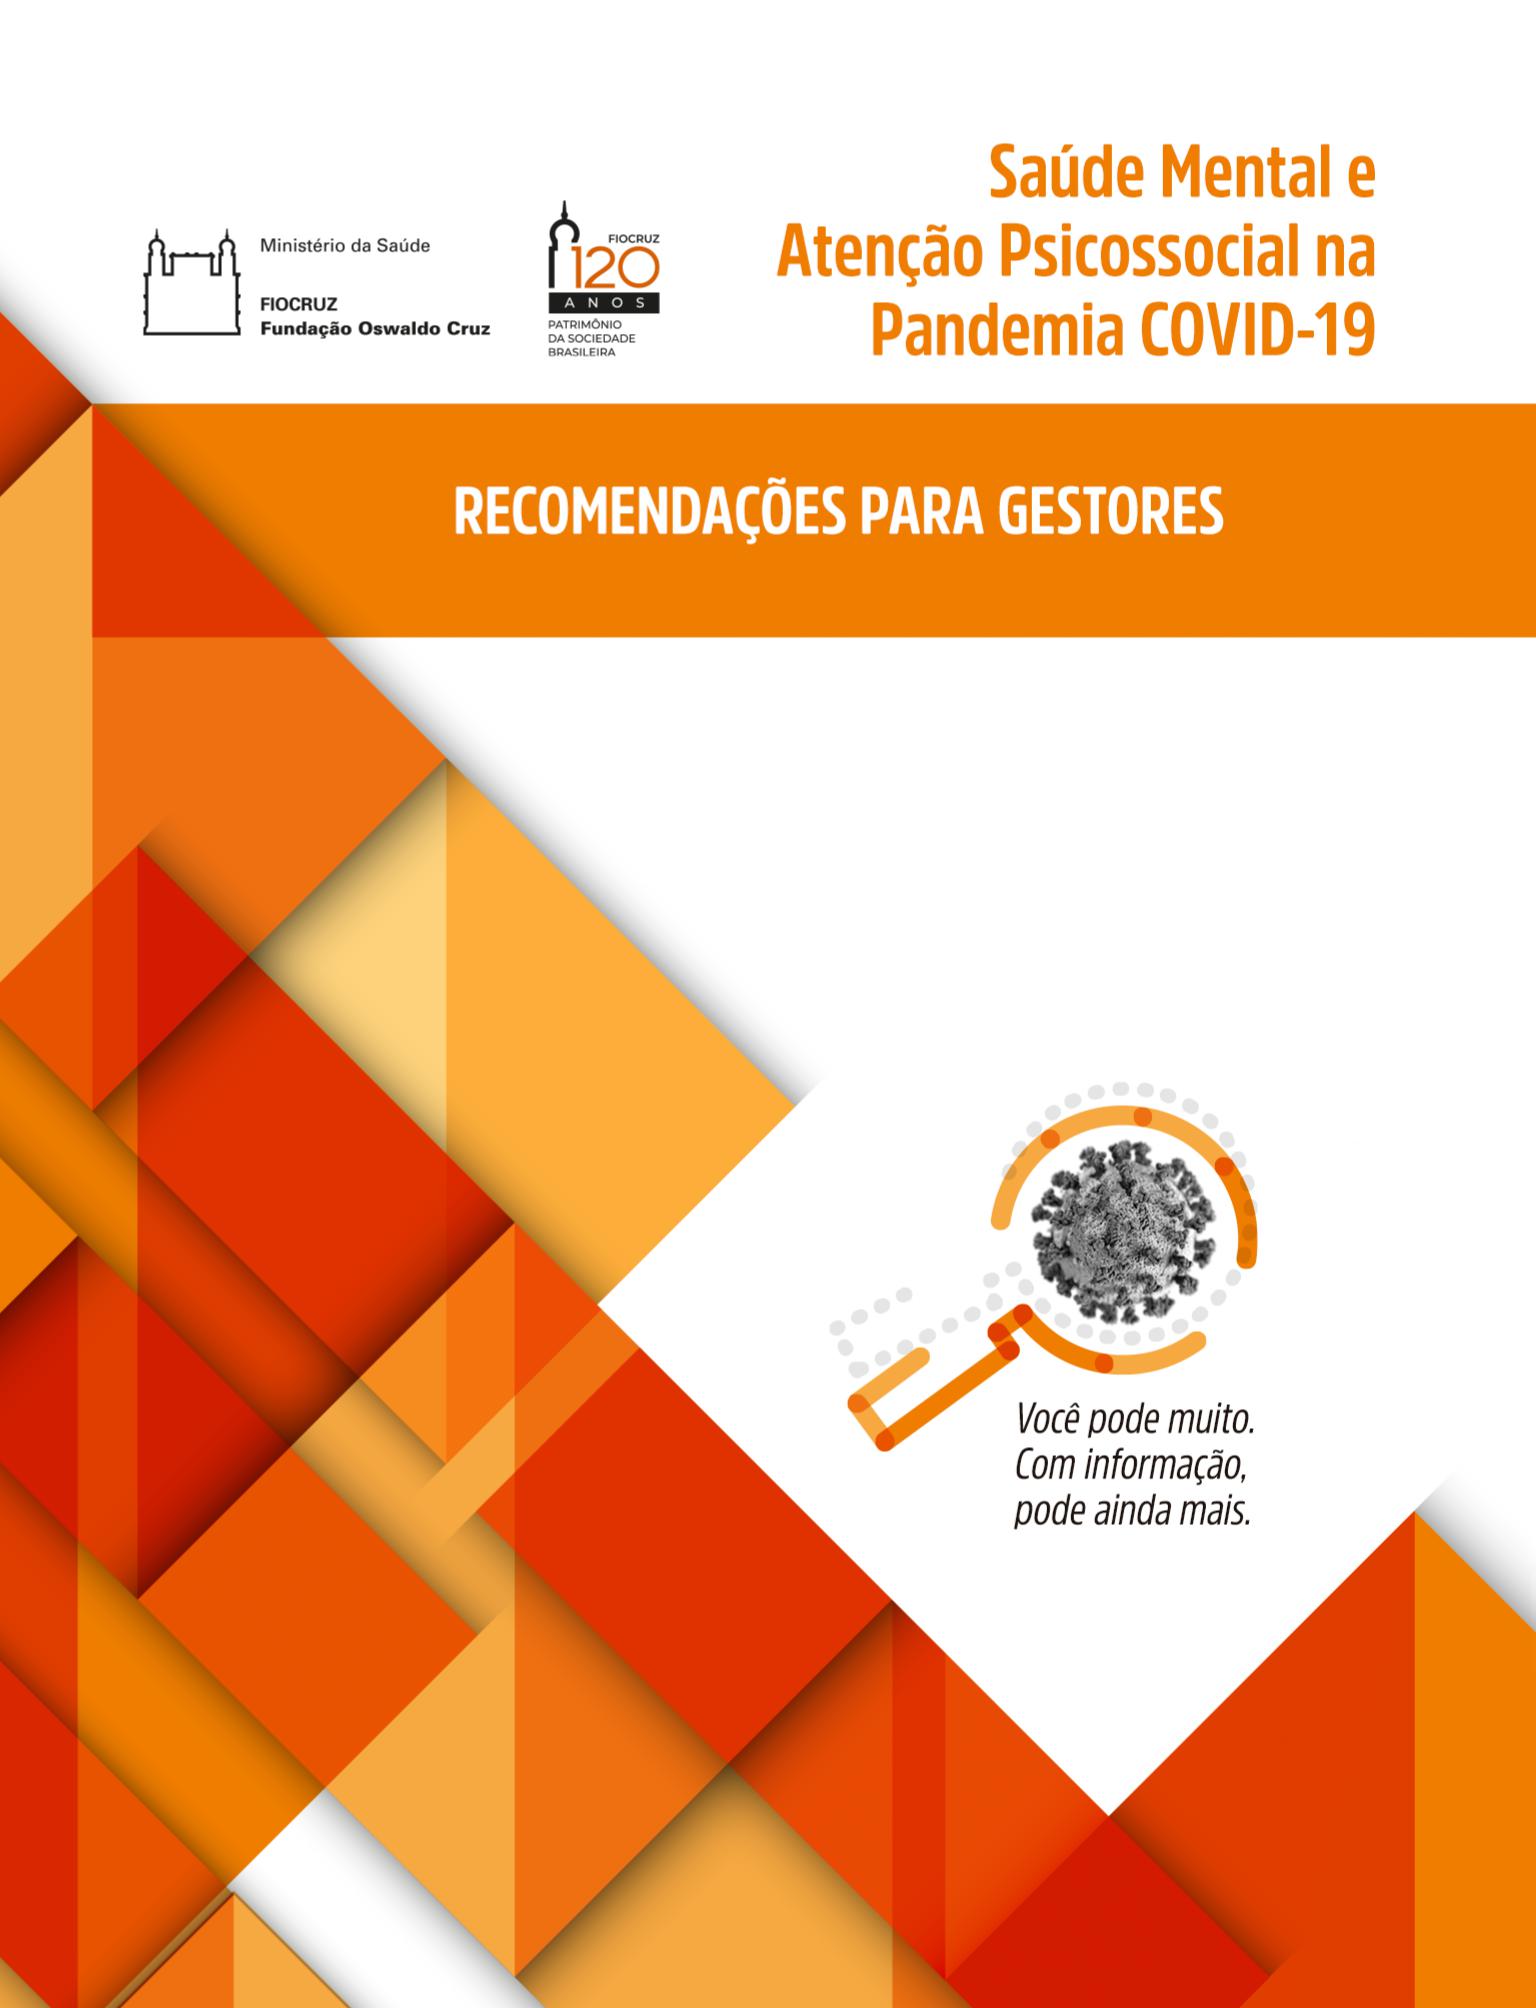  Saúde Mental e Atenção Psicossocial na Pandemia Covid-19 – recomendações para gestores